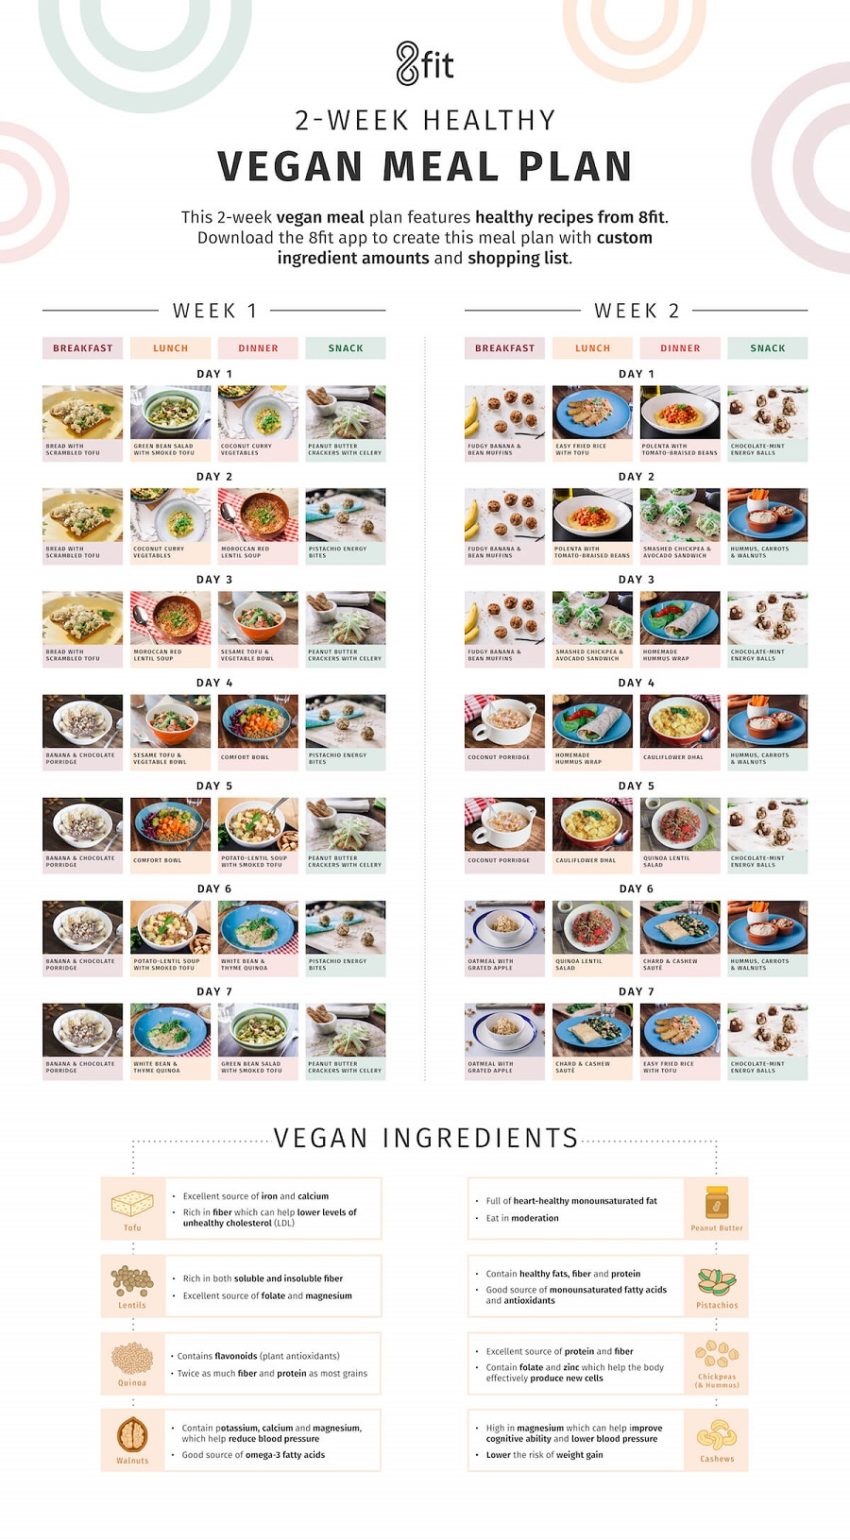 Veg Protein Diet Chart